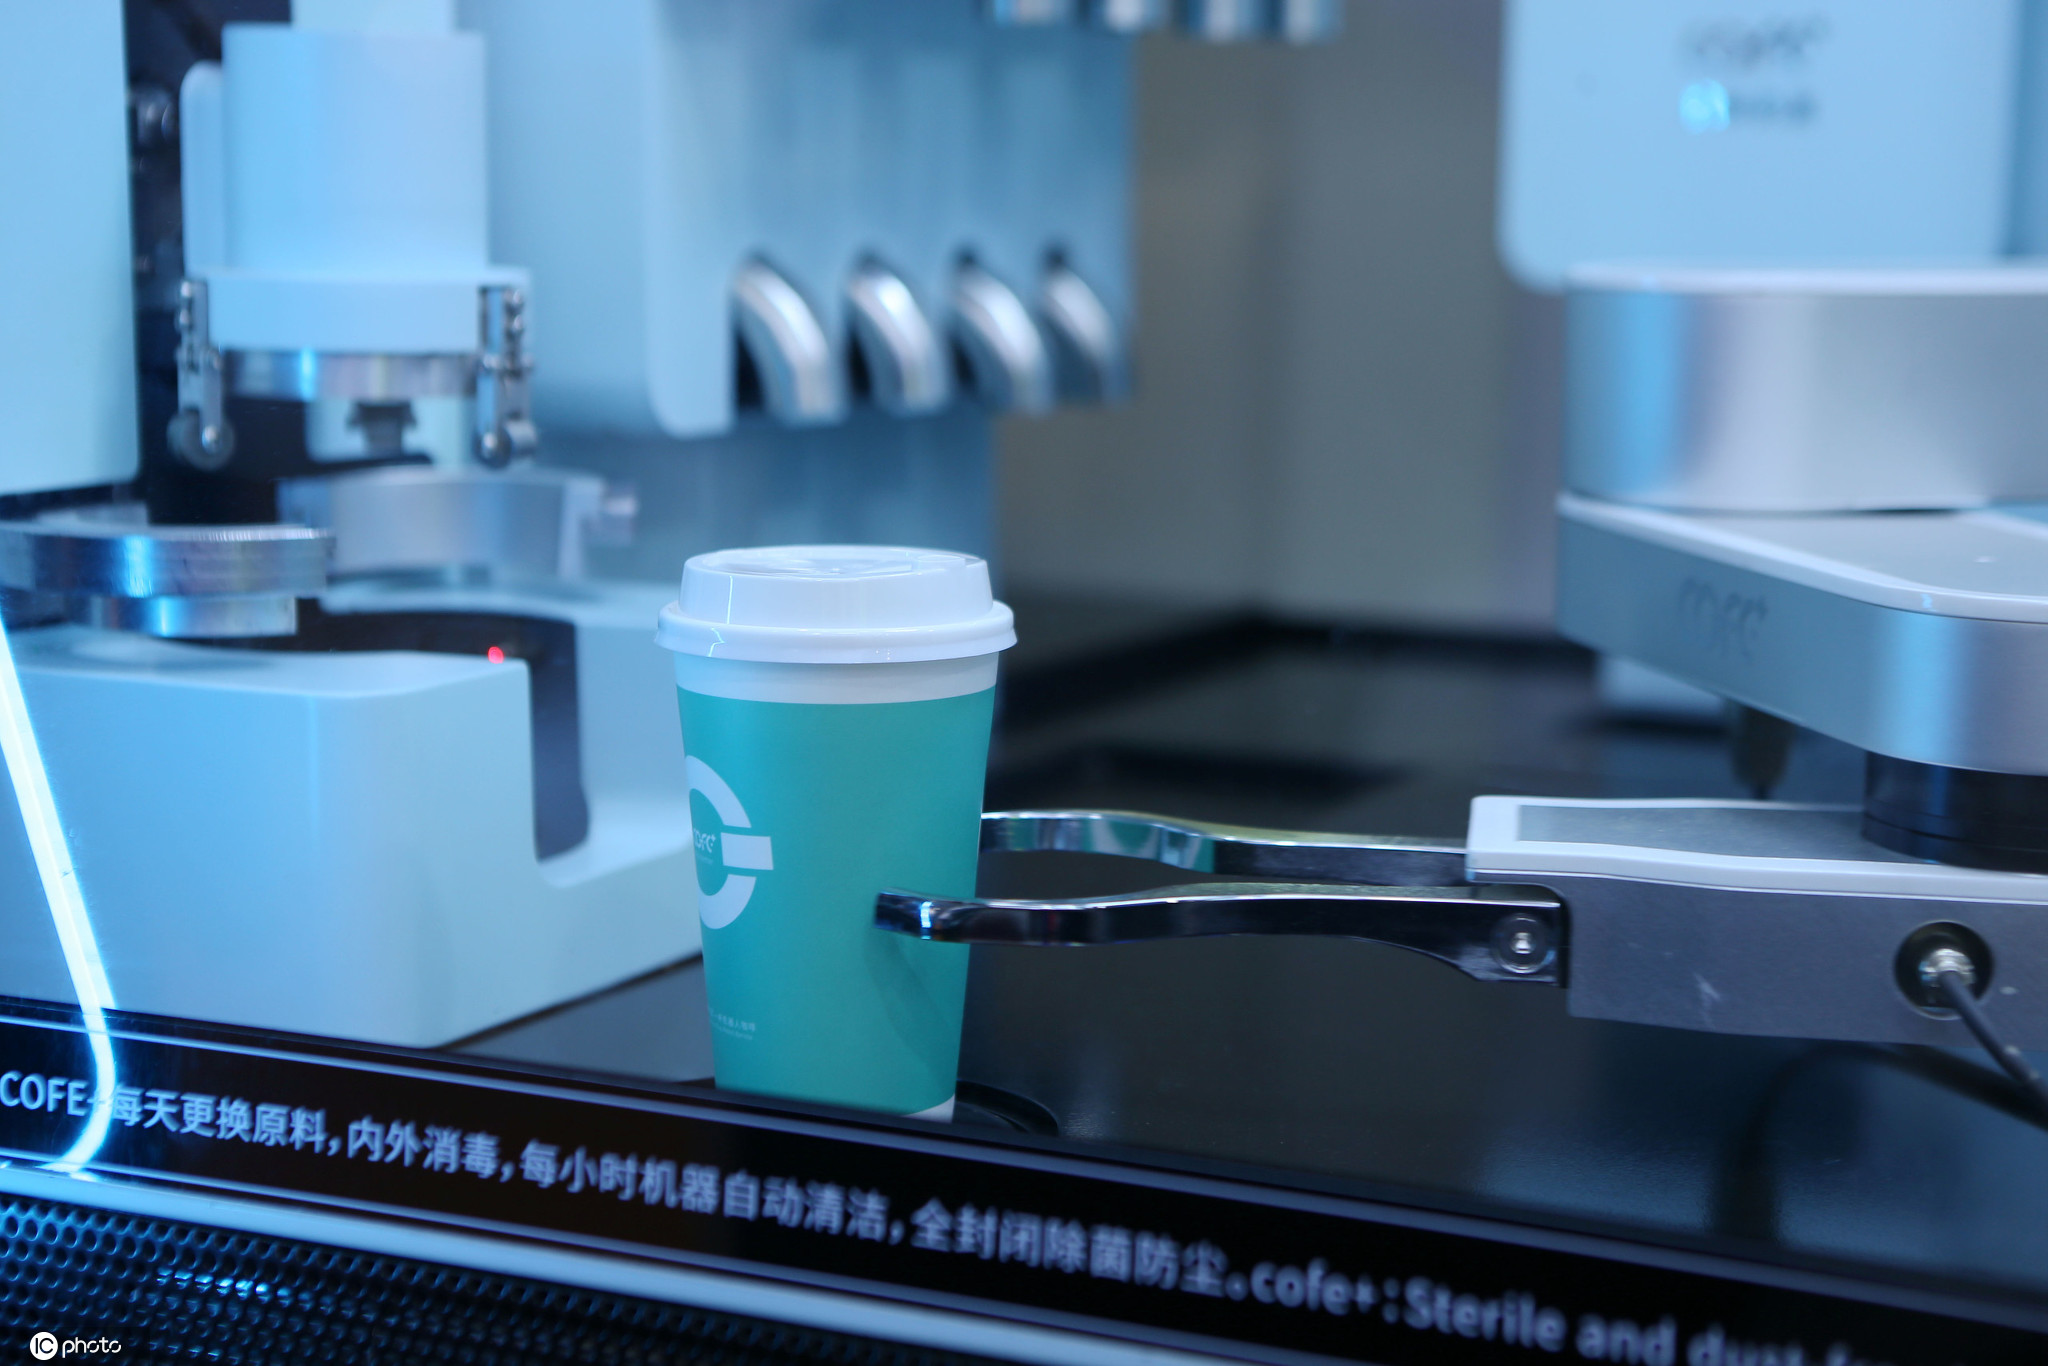 「第一财经」专题采访报道COFE+机器人咖啡亭